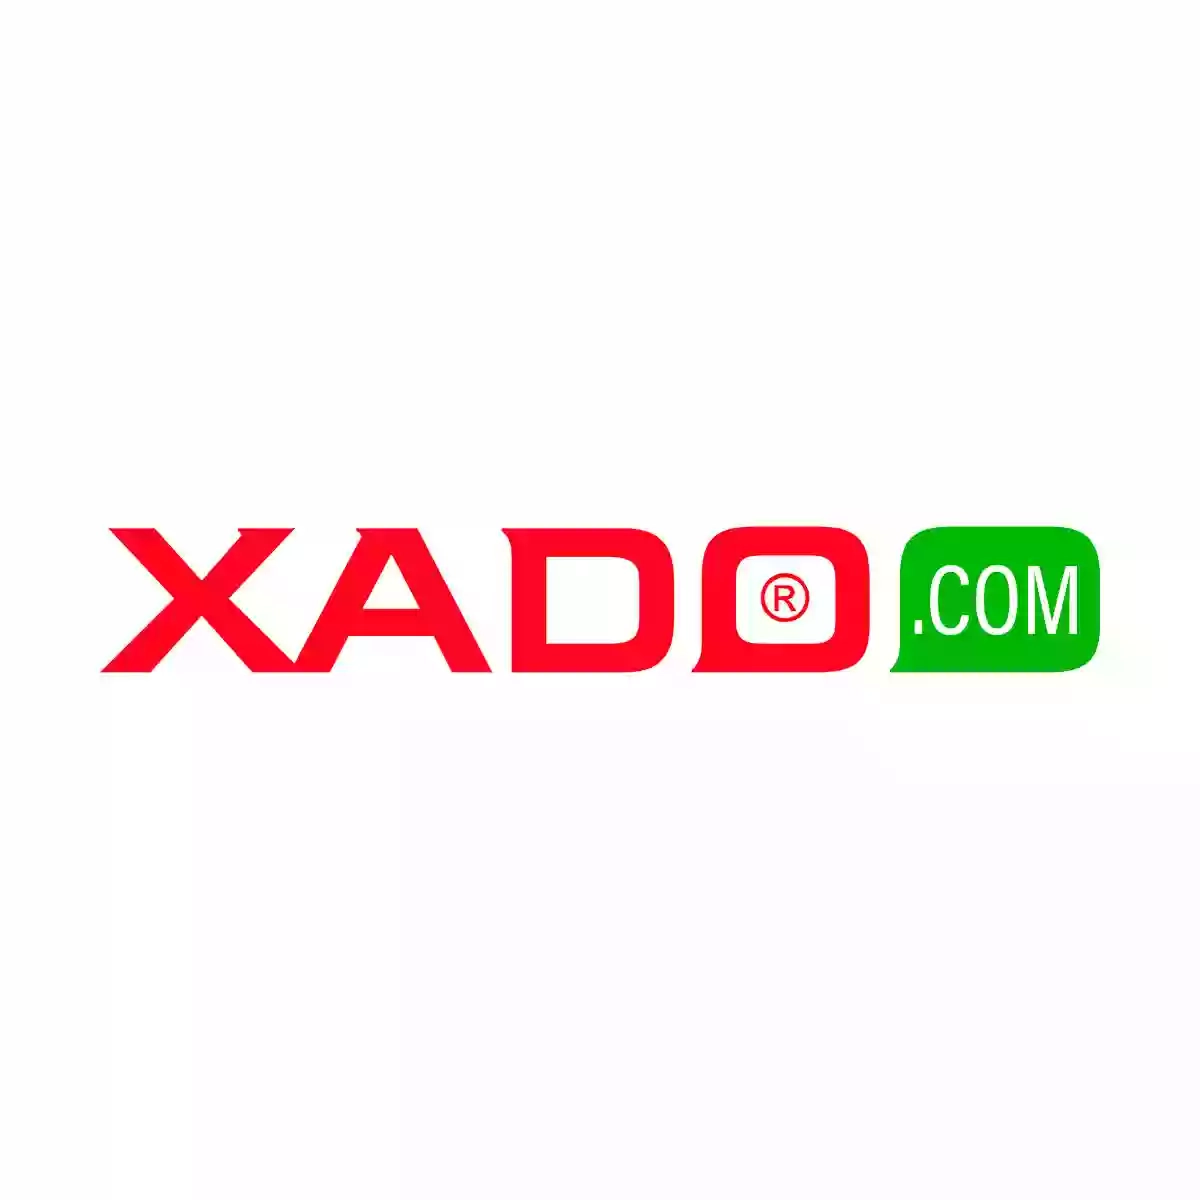 XADO Service